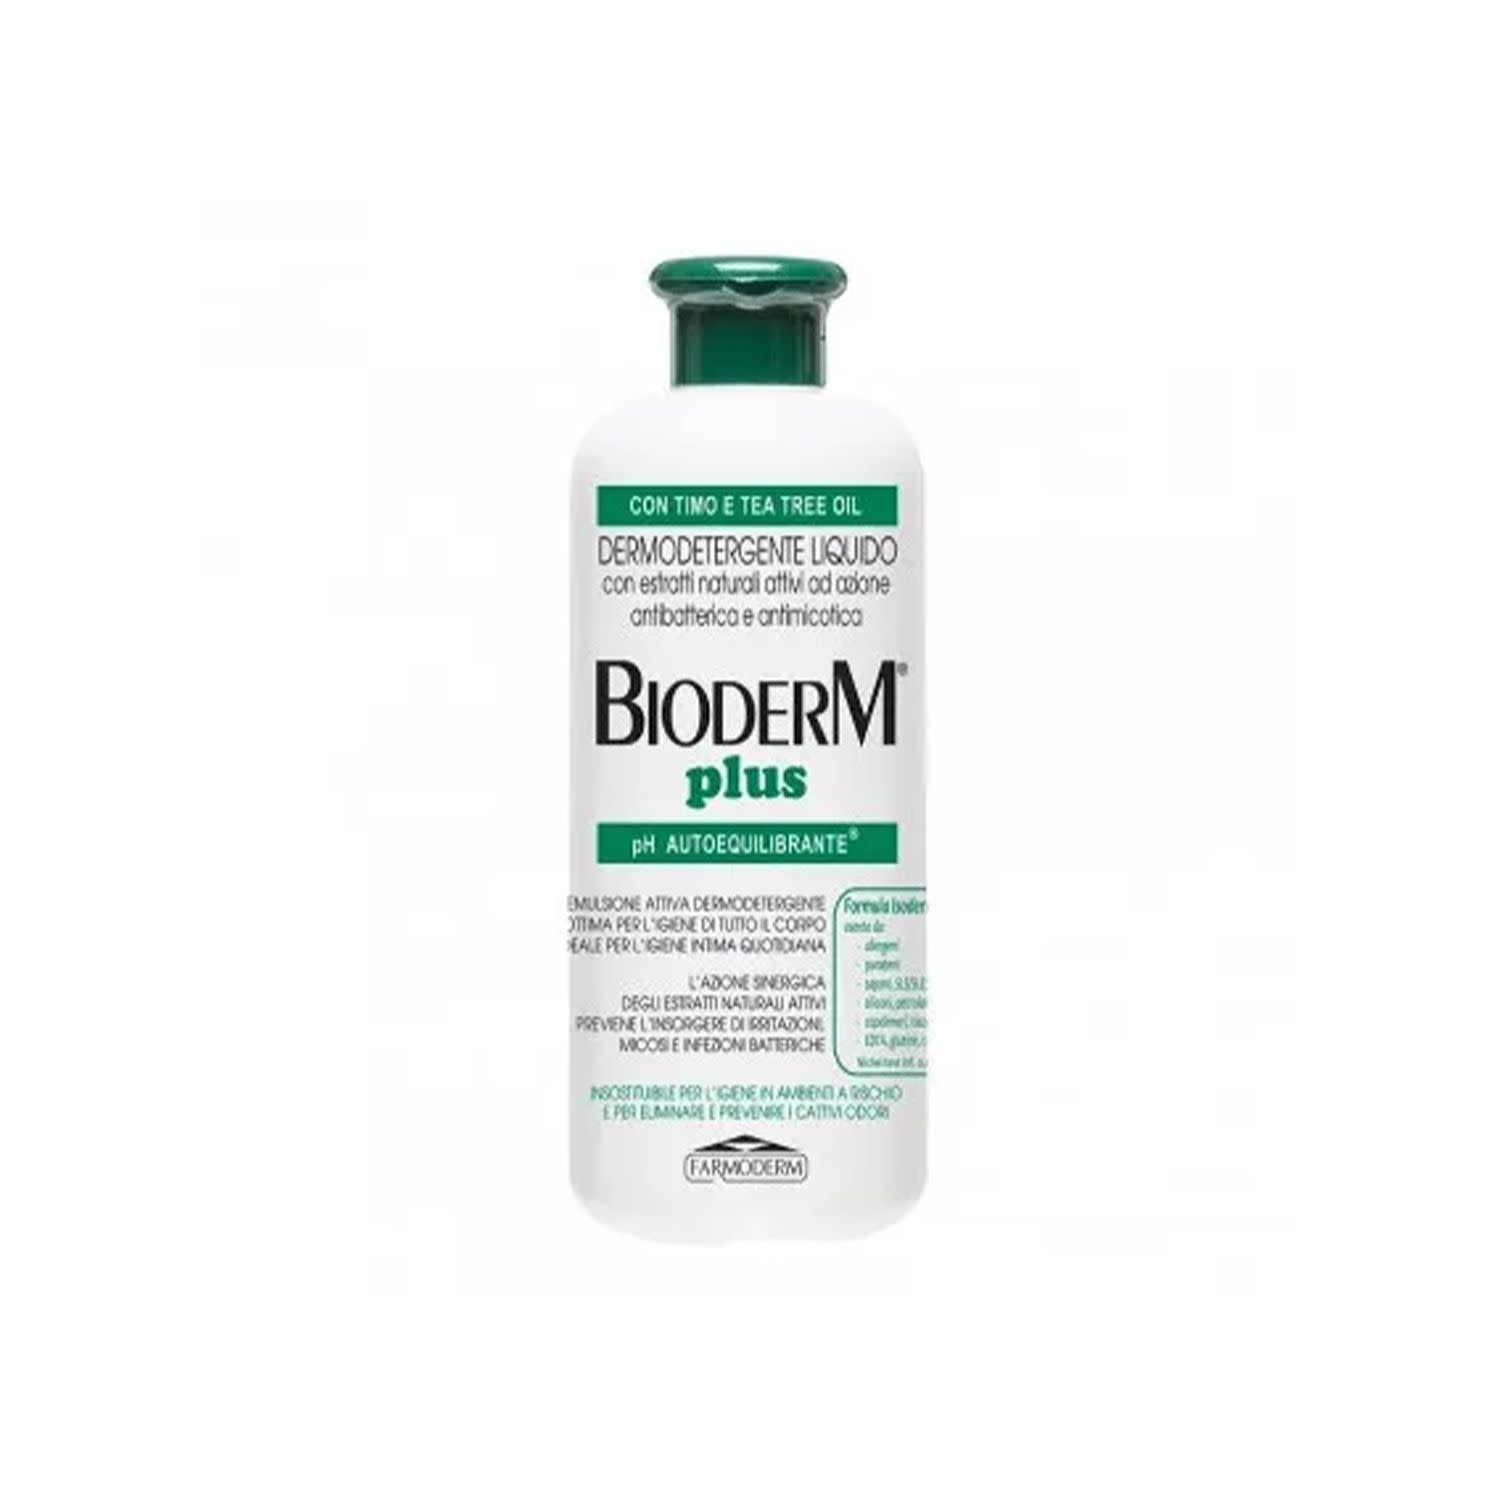 902406420 - Bioderm Plus Detergente Antibatterico 500ml - 4713633_2.jpg